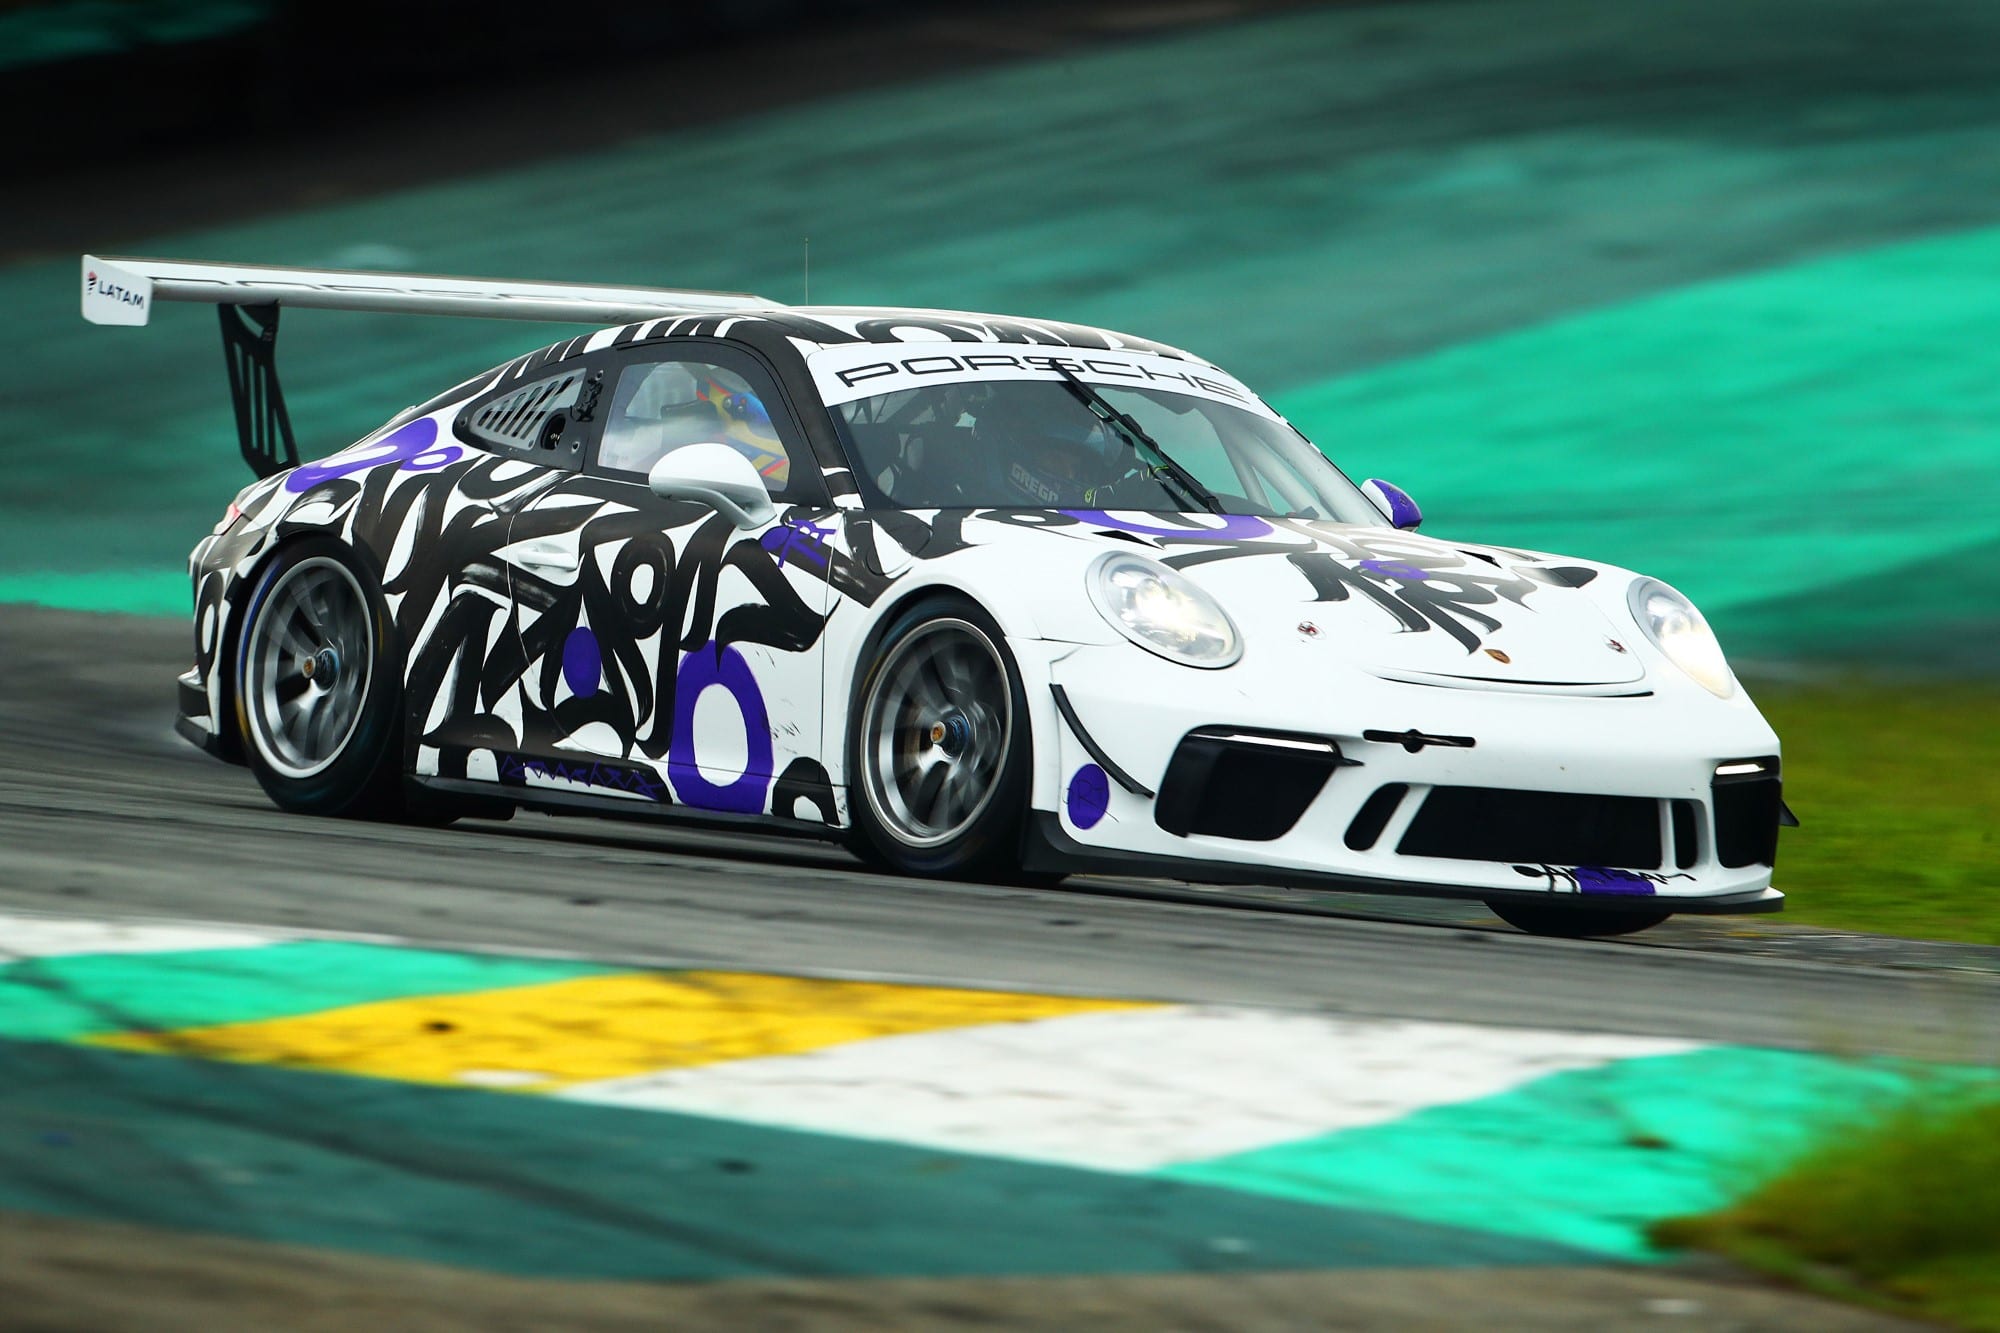 Live painting de Rafael Sanchez Filadelfio com as letras da marca Oakberry que será a base do layout do Porsche de Frangulis em 2021